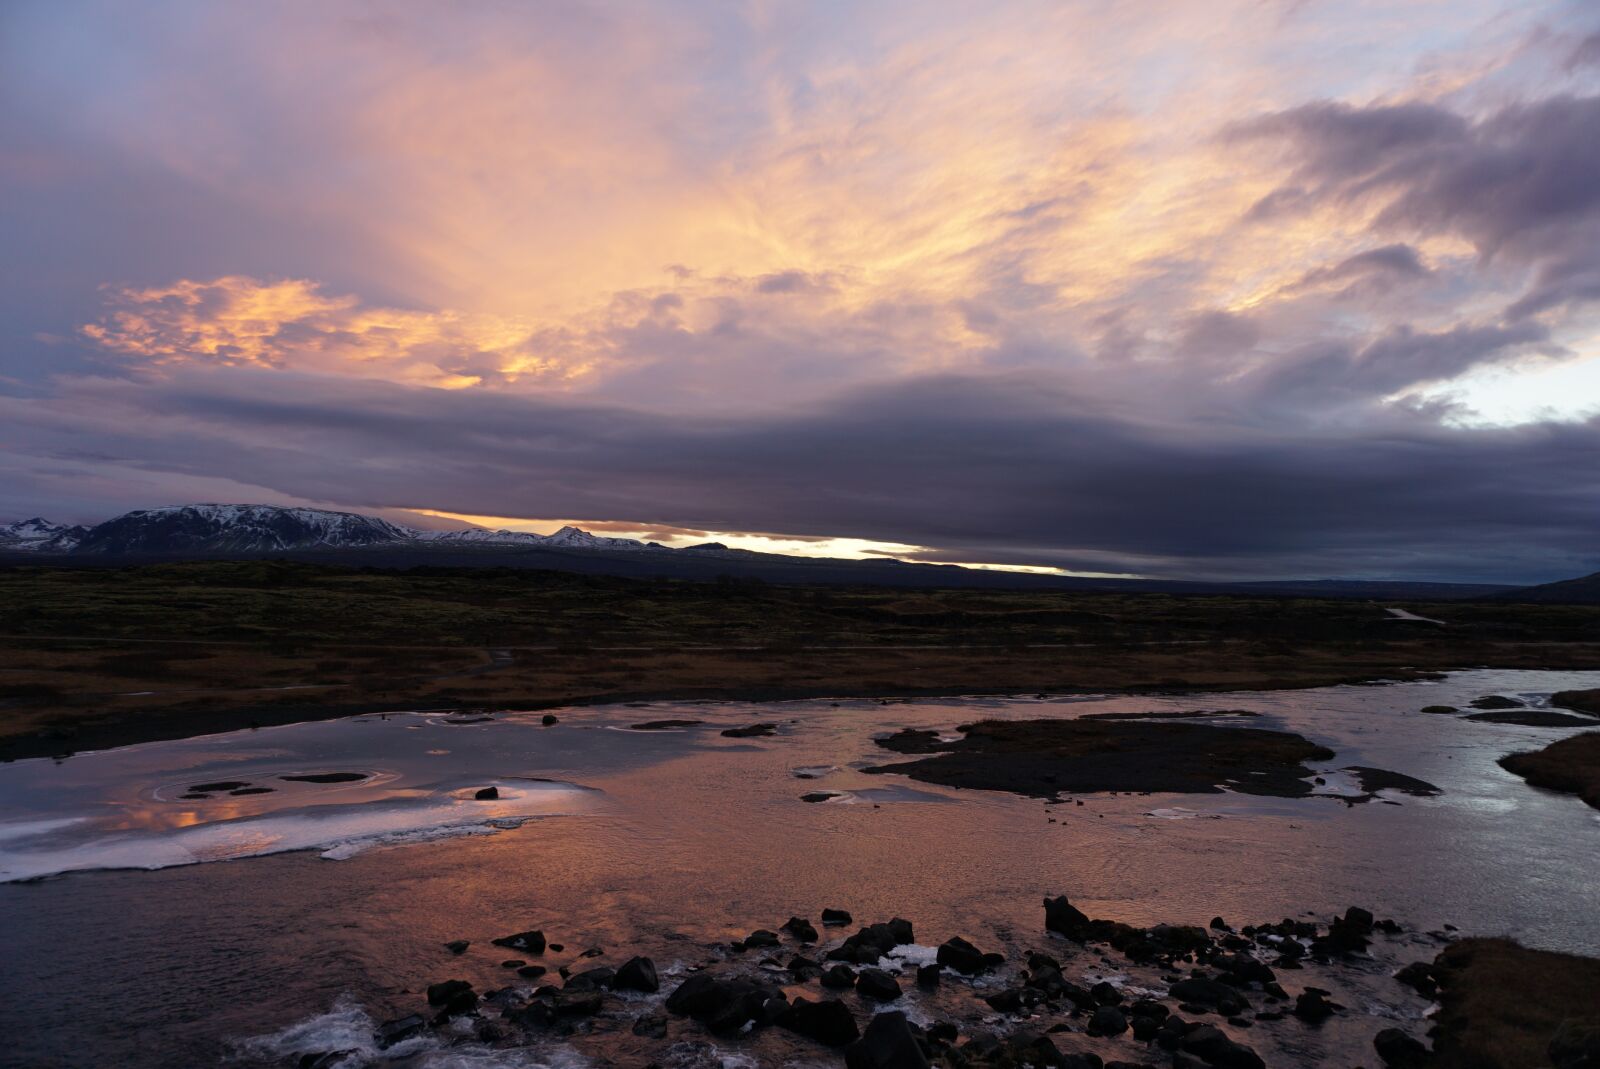 Sony a6000 sample photo. Iceland, sky, landscape photography